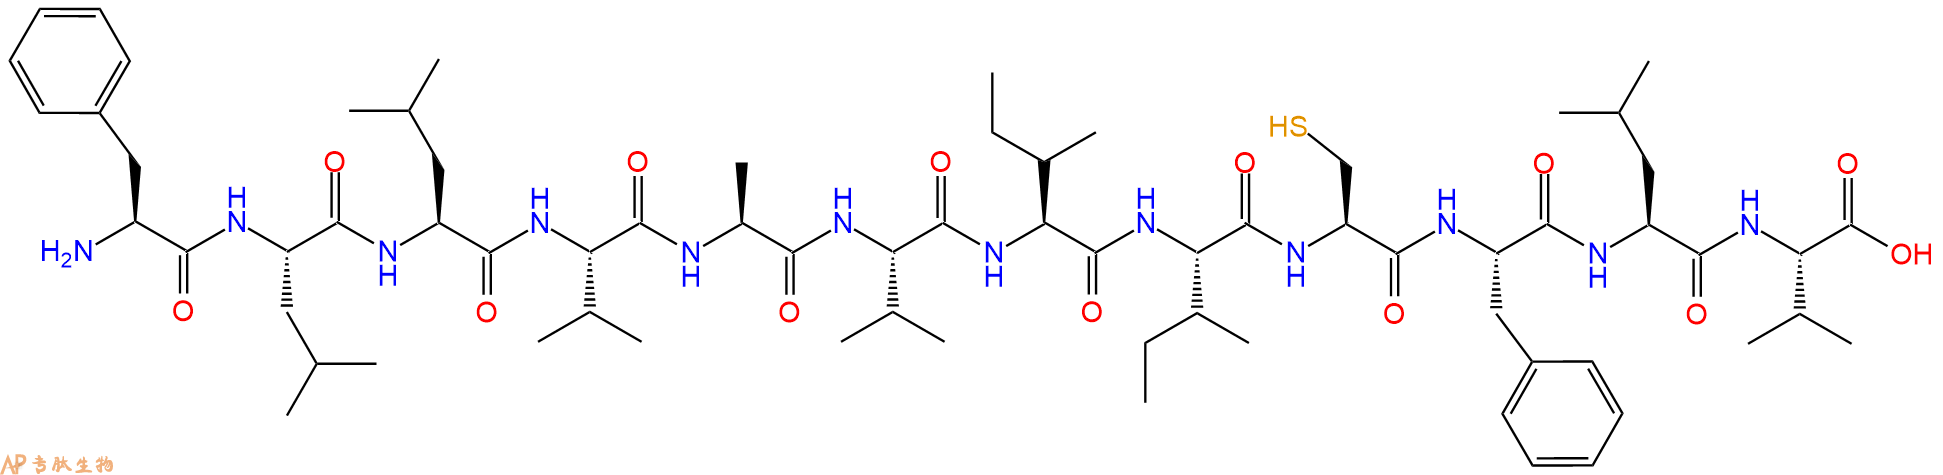 专肽生物产品H2N-Phe-Leu-Leu-Val-Ala-Val-Ile-Ile-Cys-Phe-Leu-Va